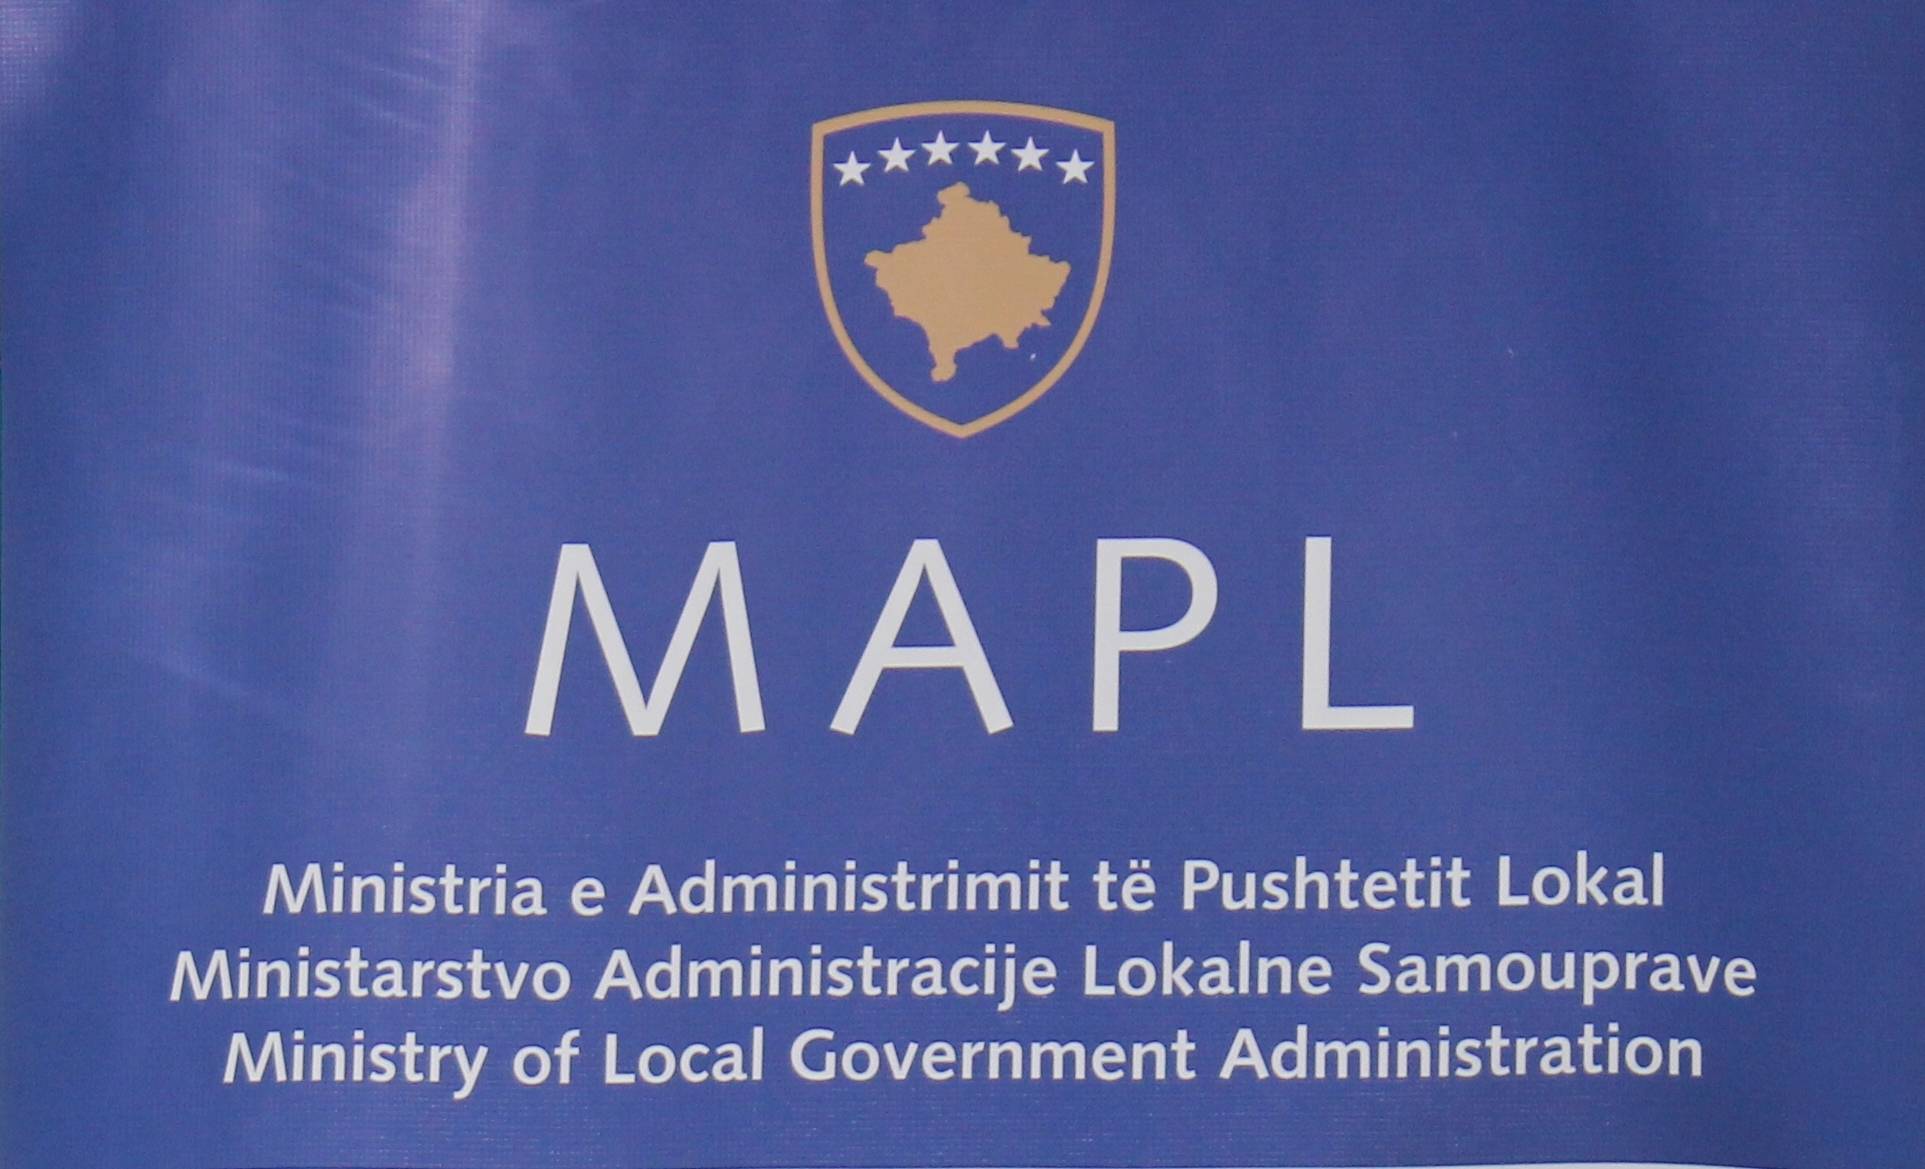 Ministria e Administrimit të Pushtetit Lokal thërret konferencë për media - Lajmi.net